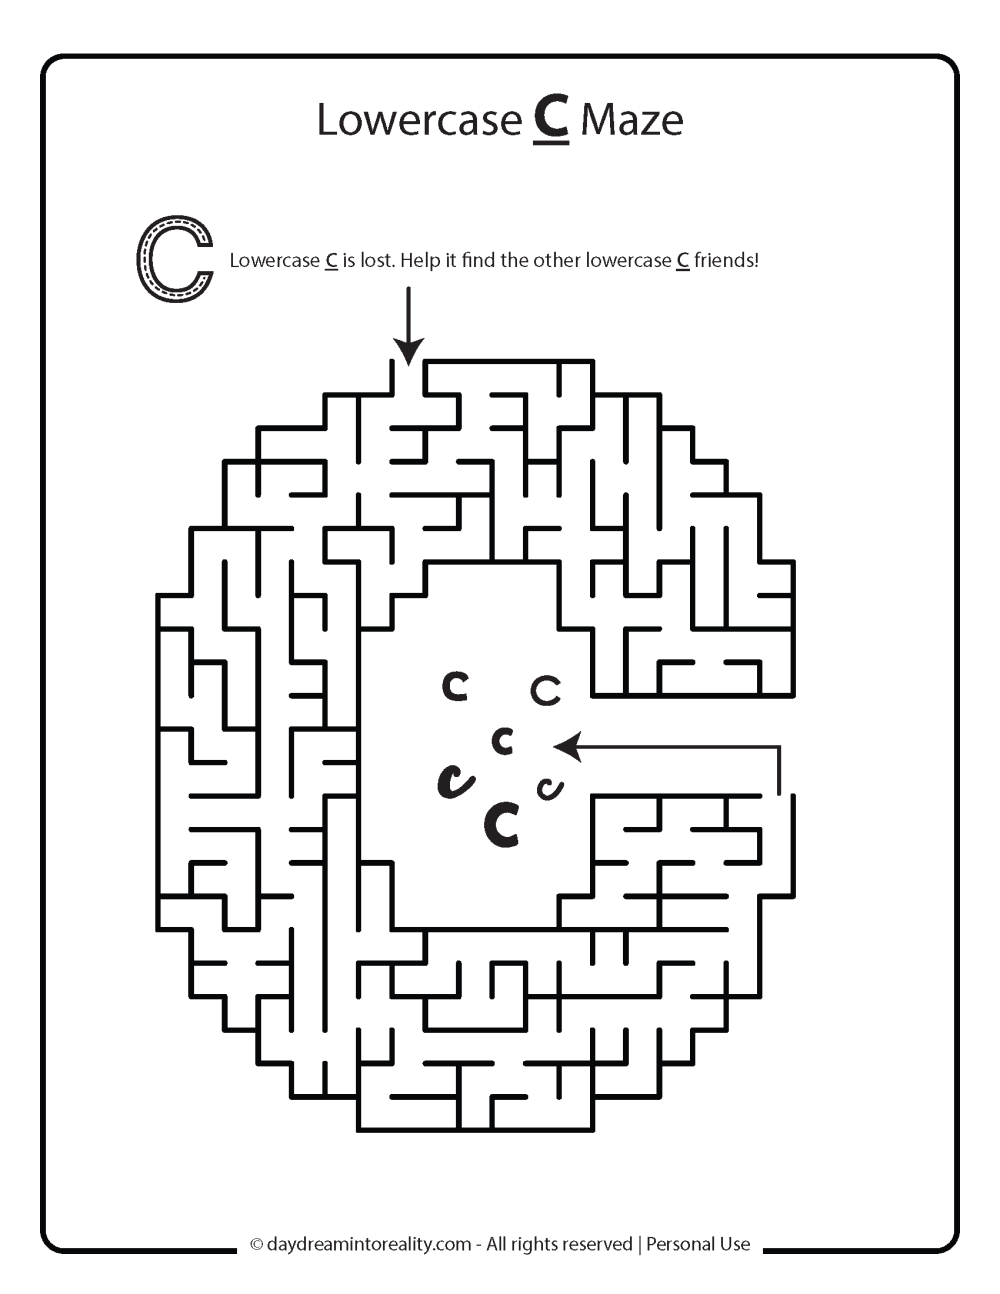 Lowercase C maze worksheet free printable